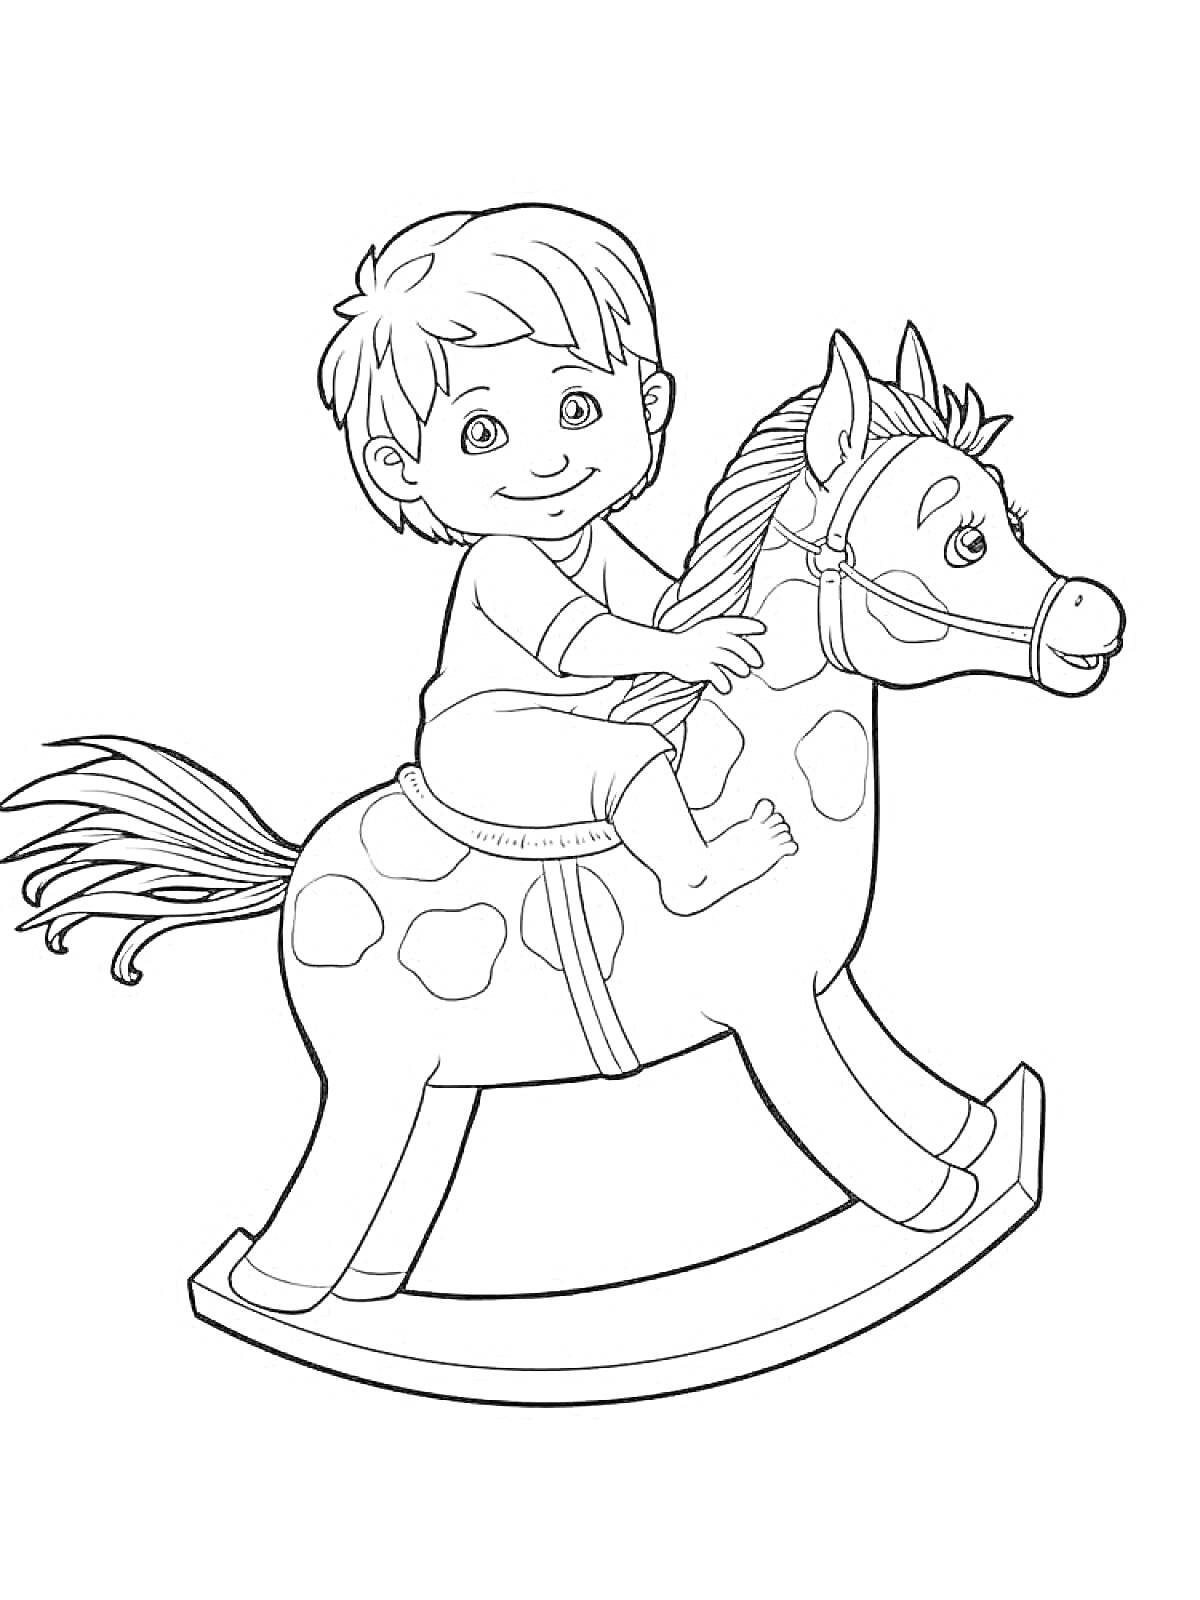 Раскраска Мальчик на качалке лошадке